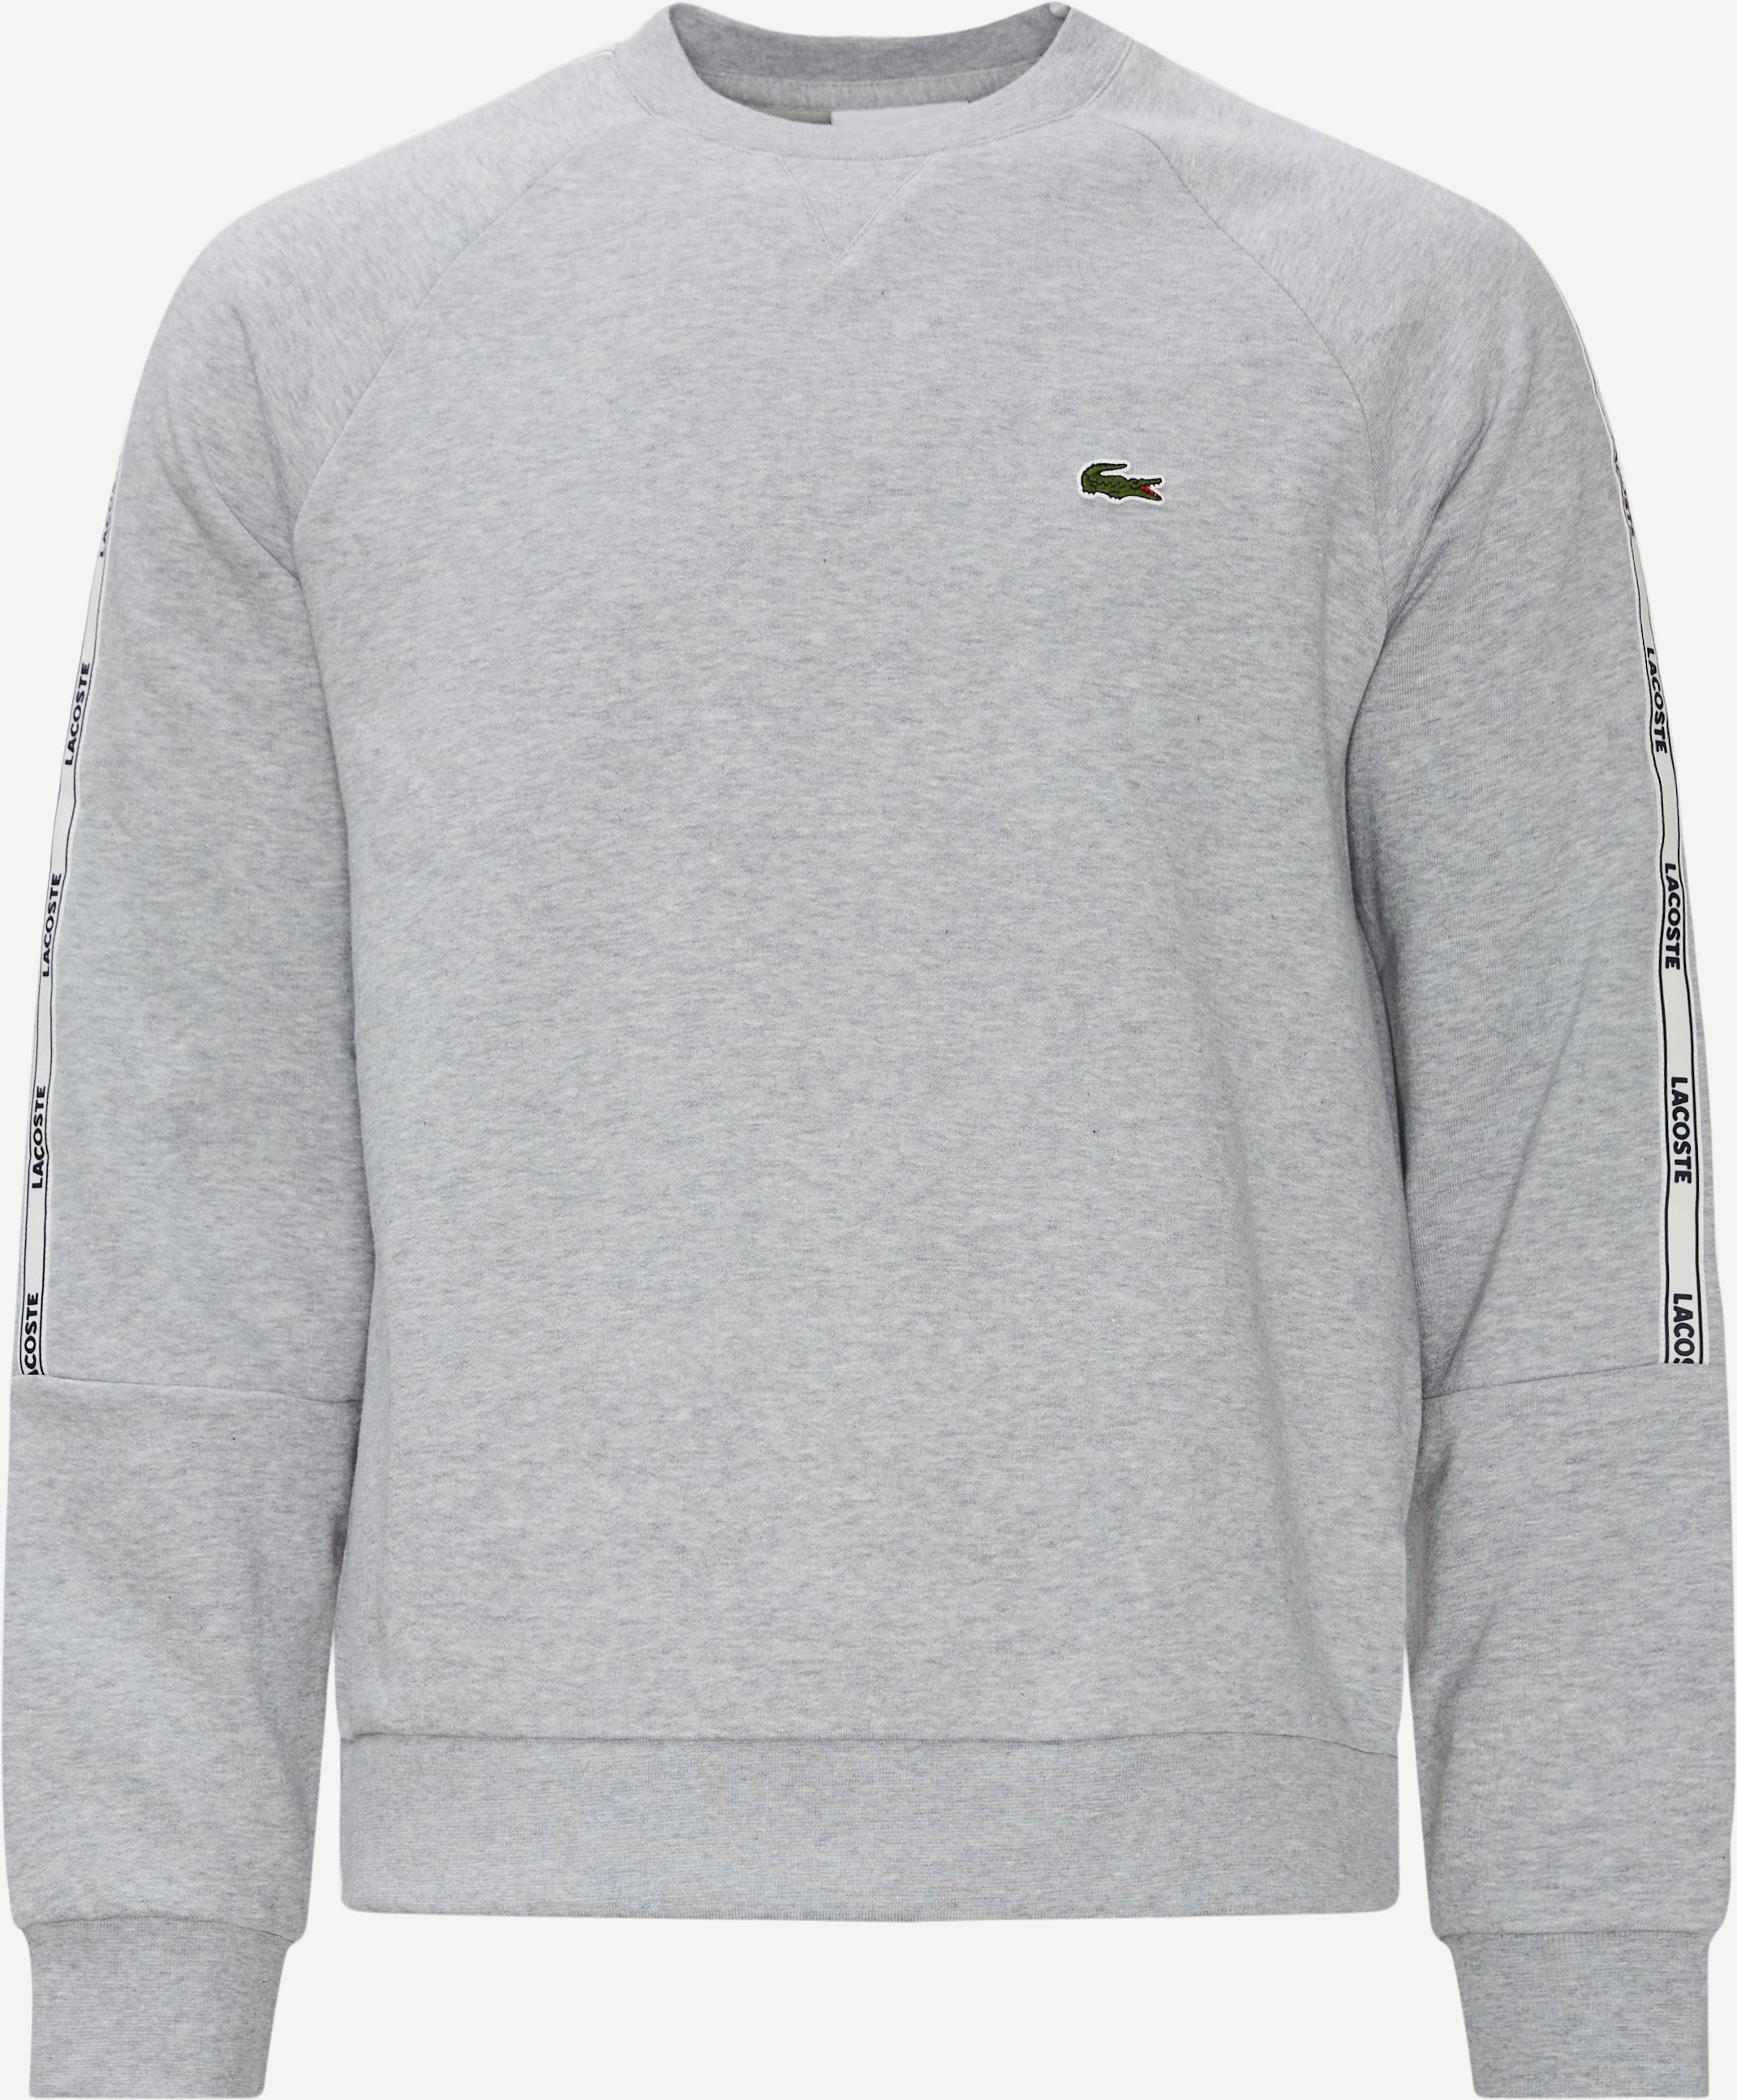 Sweatshirts - Classic fit - Grå